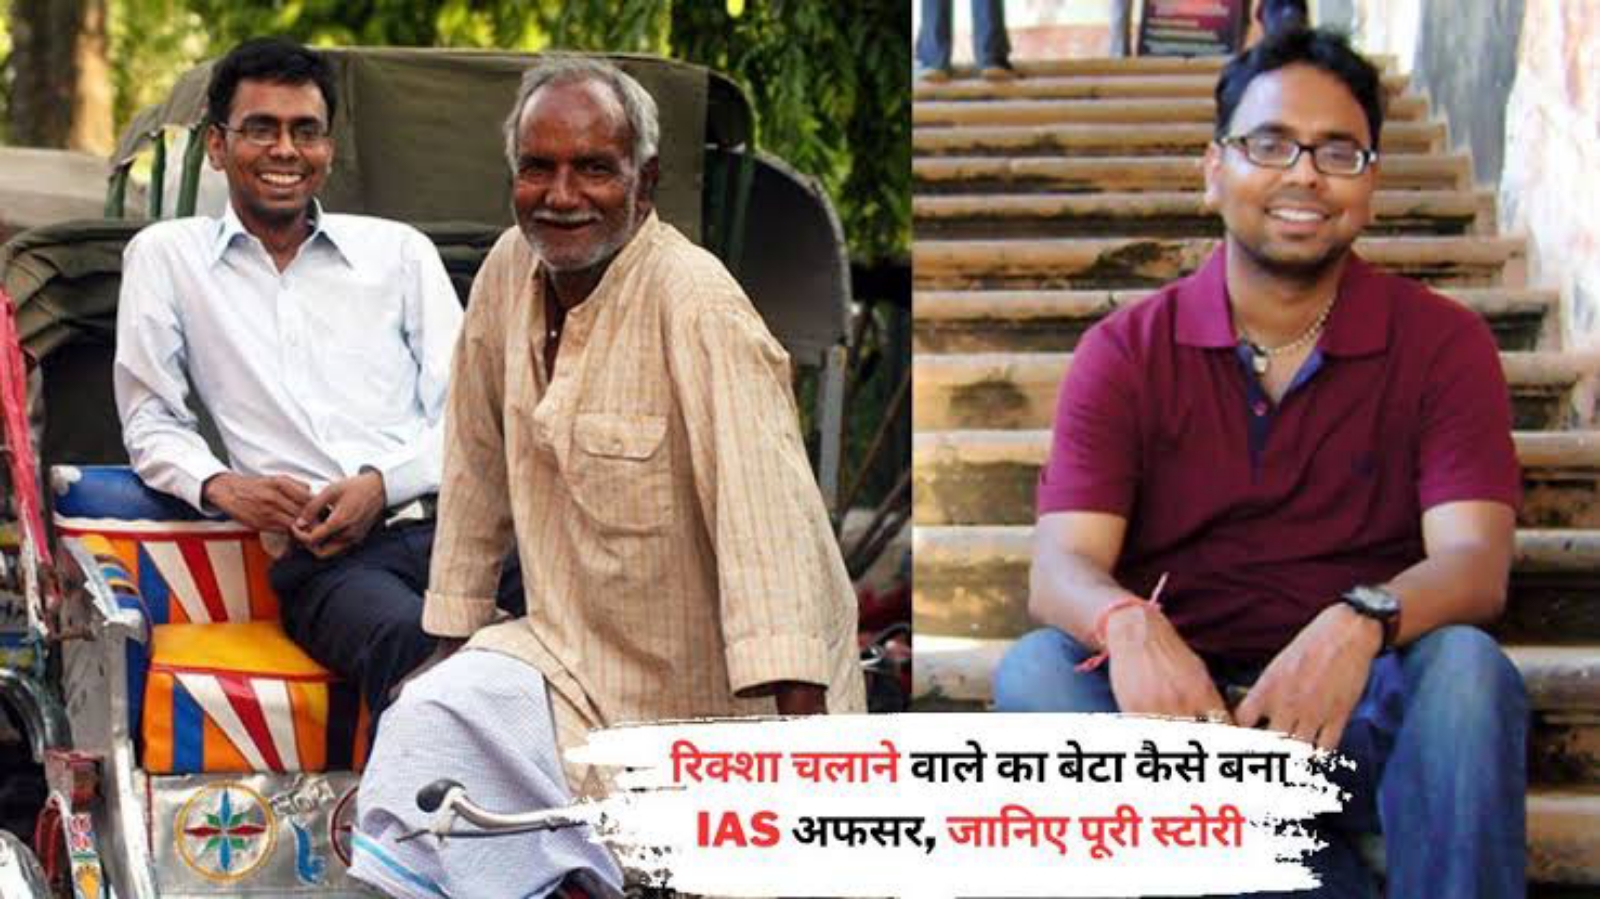 पिता ने रिक्शा चलाकर पढ़ाया; बेटे ने पहले ही प्रयास में पास की UPSC परीक्षा, बने IAS